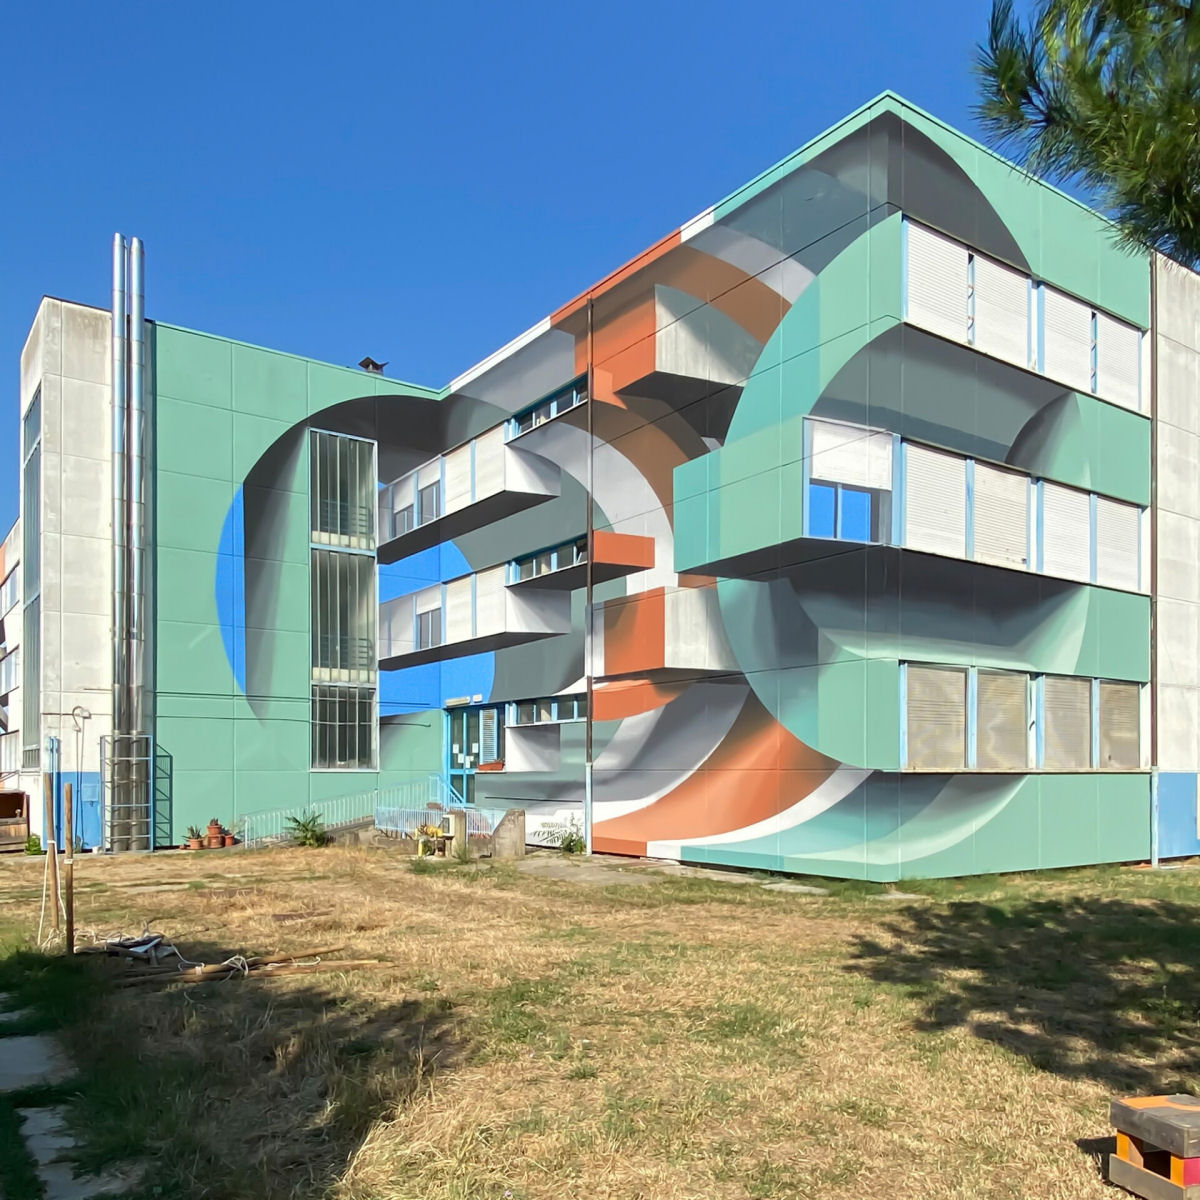 Formas geométricas e ilusões tridimensionais interrompem a arquitetura em murais anamórficos 07